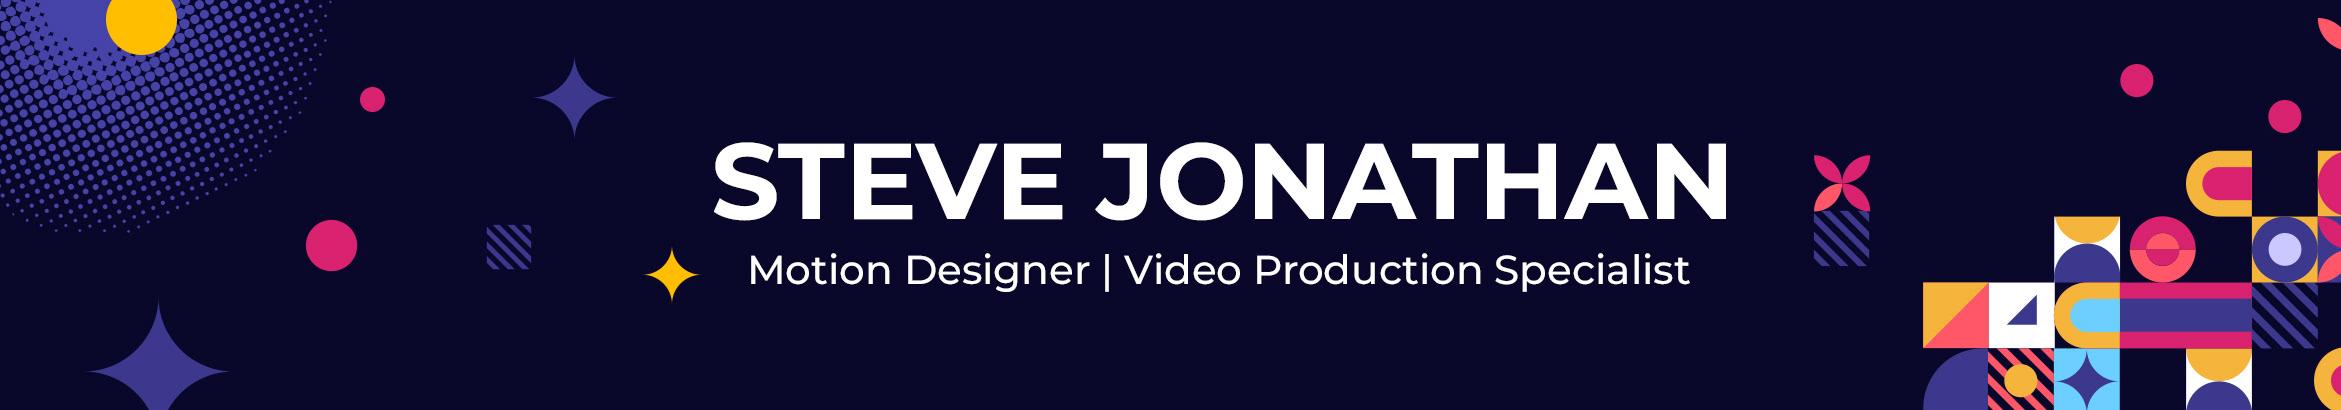 Steve Jonathan's profile banner